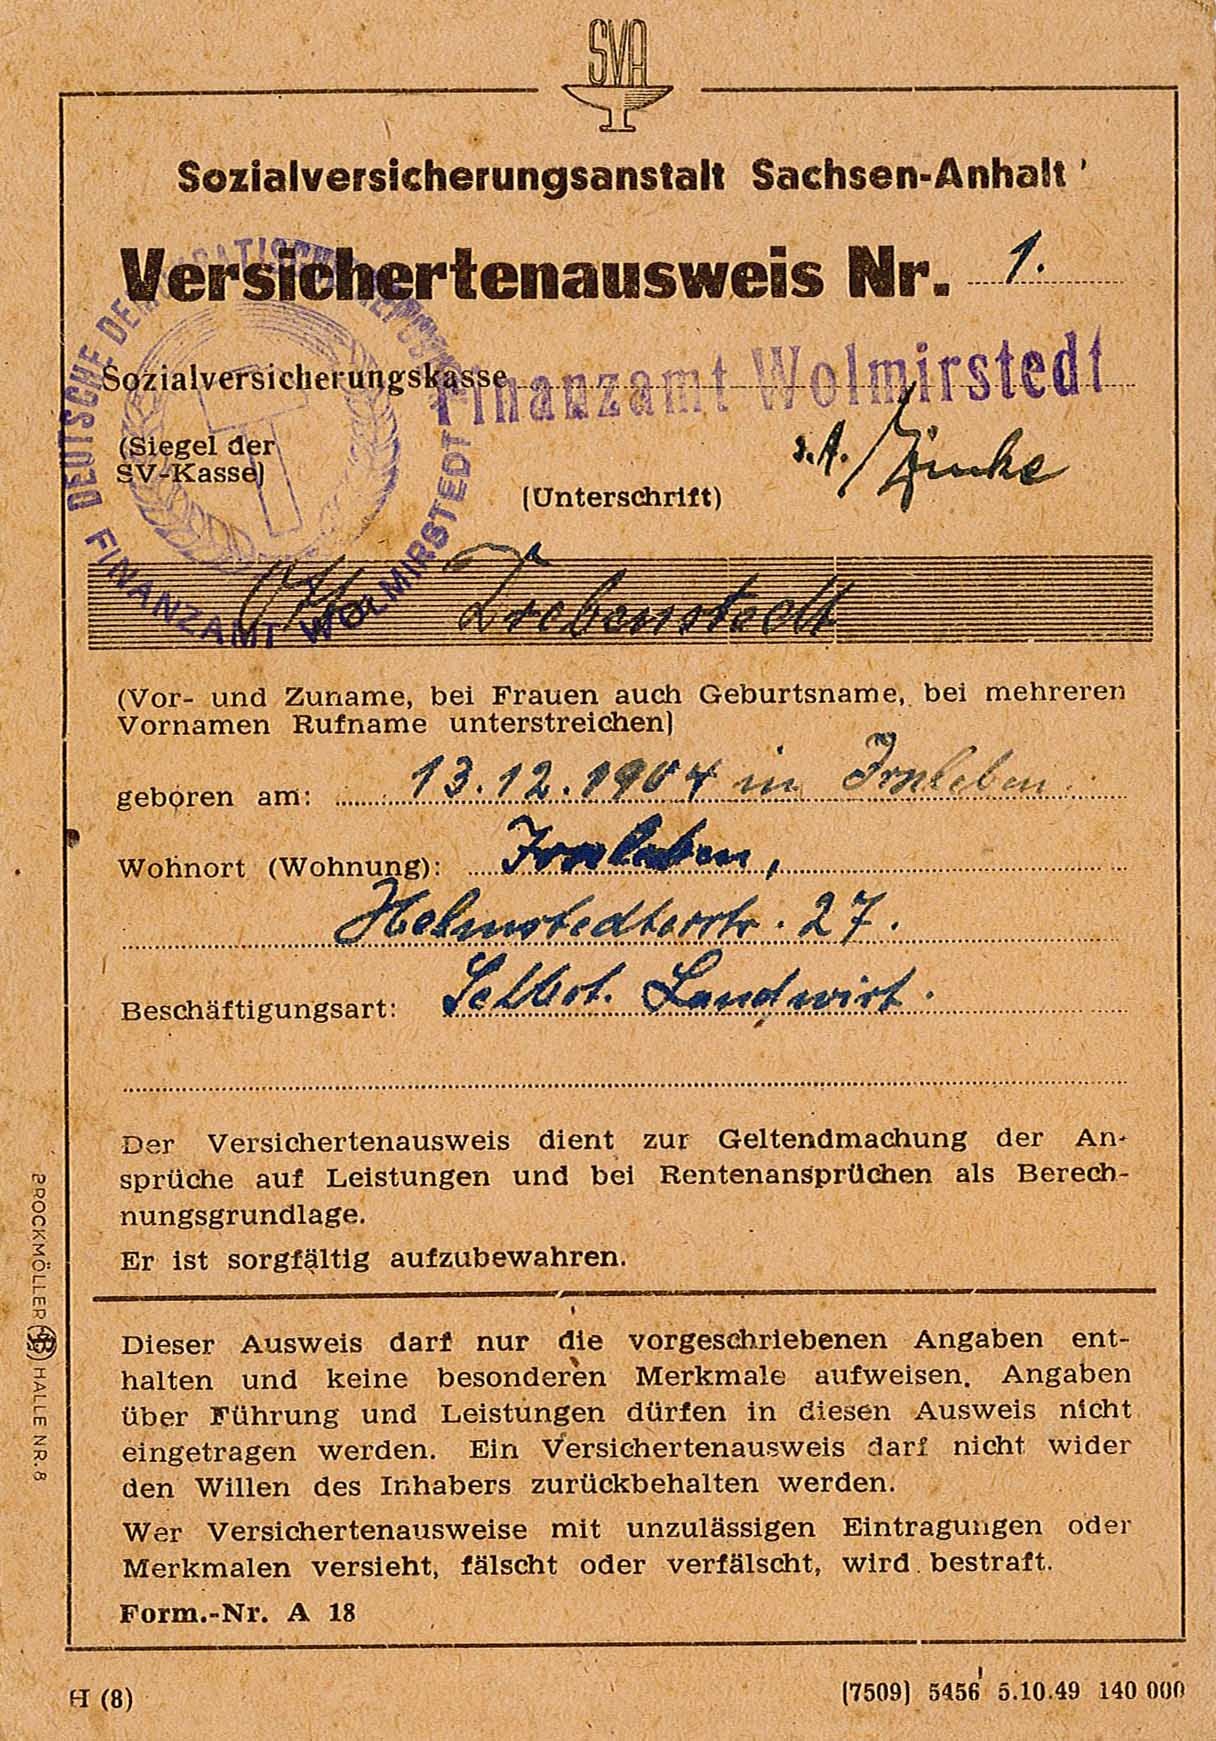 Versichertenausweis für Otto Drebenstedt für die Sozialversicherungsanstalt Sachsen-Anhalt, 1946-1950 (Museum Wolmirstedt RR-F)